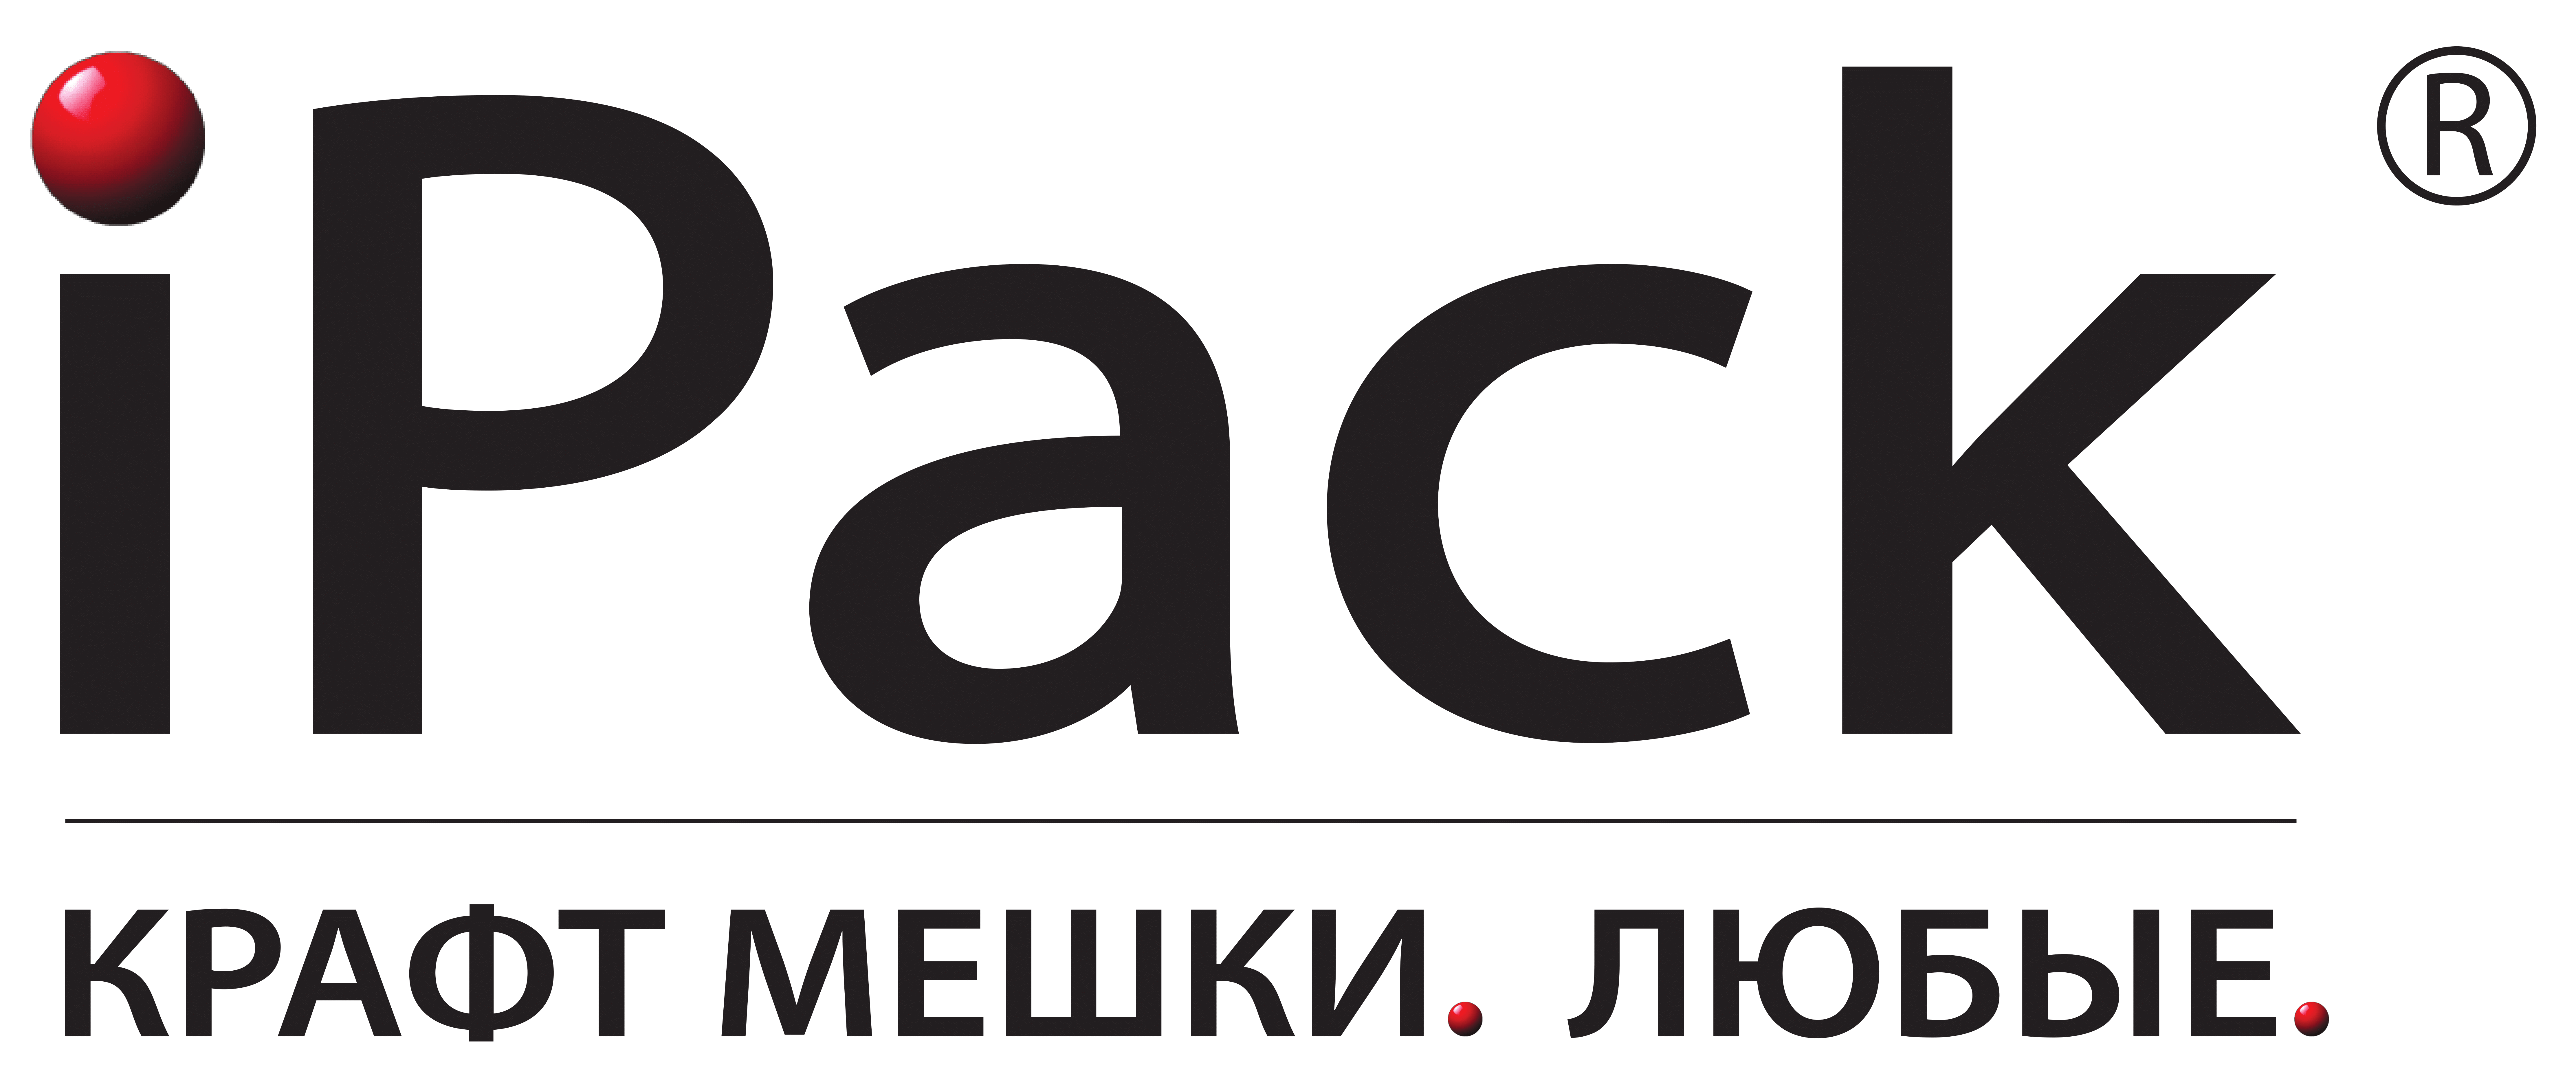 iPack Производство мешков